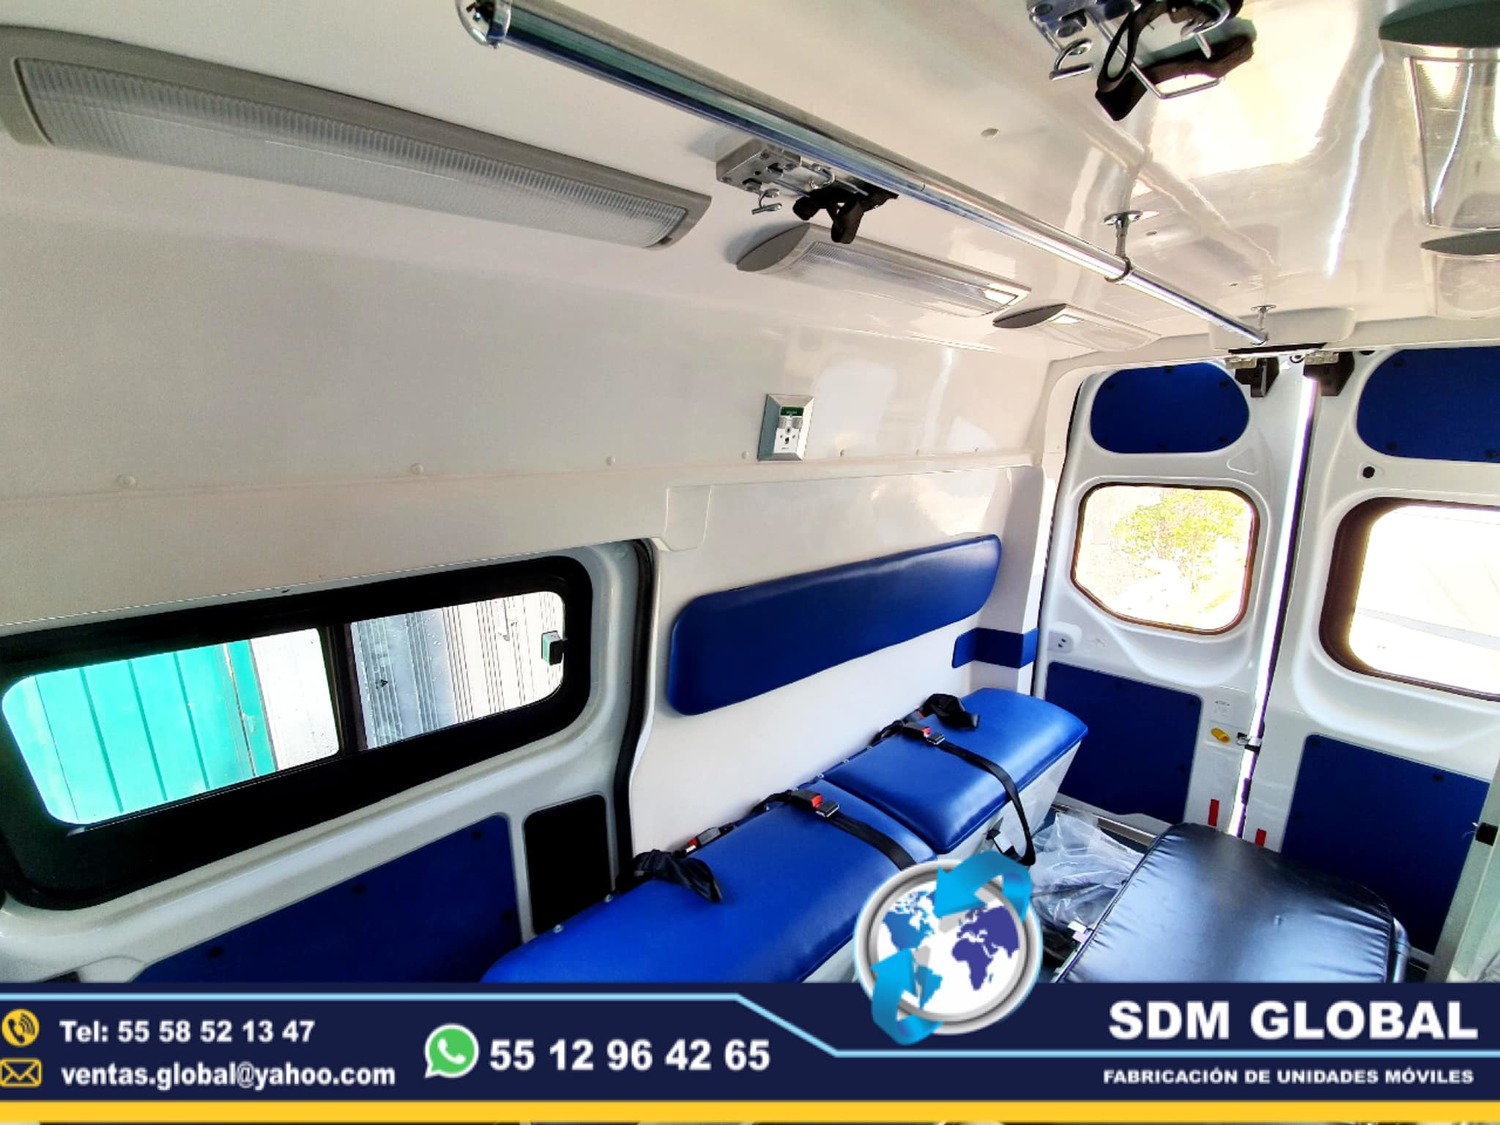 <span style="font-weight: bold;">Venta de Ambulancias de traslado en SDM Global Mexico </span><br>